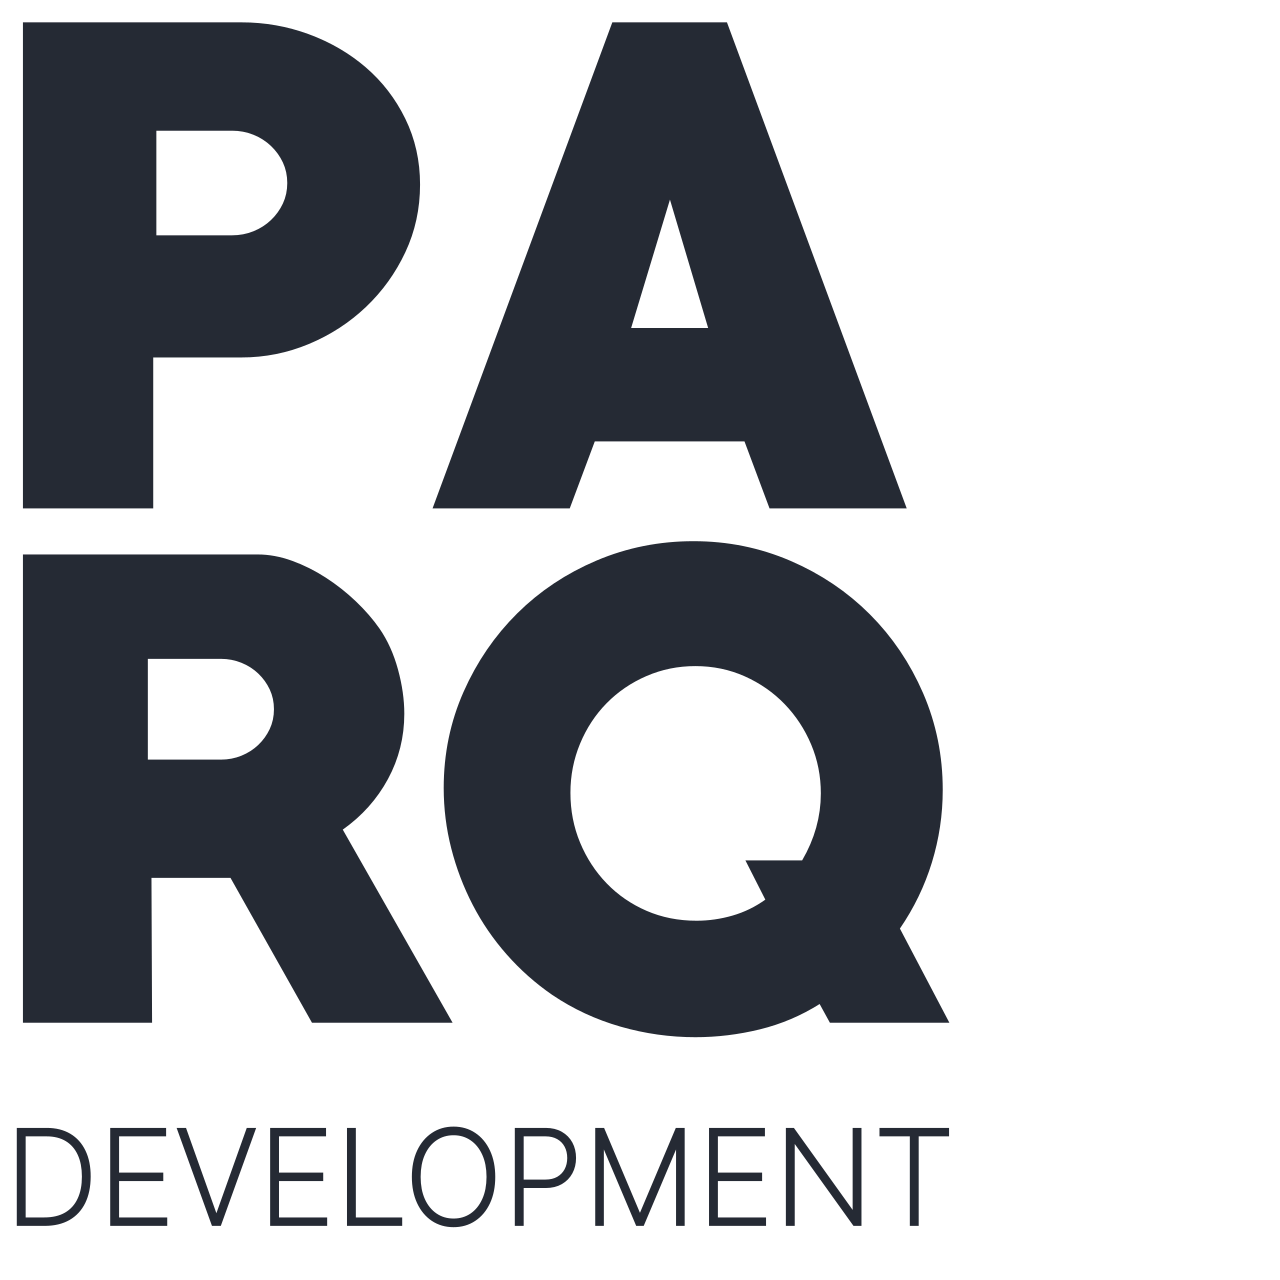 Parq Development